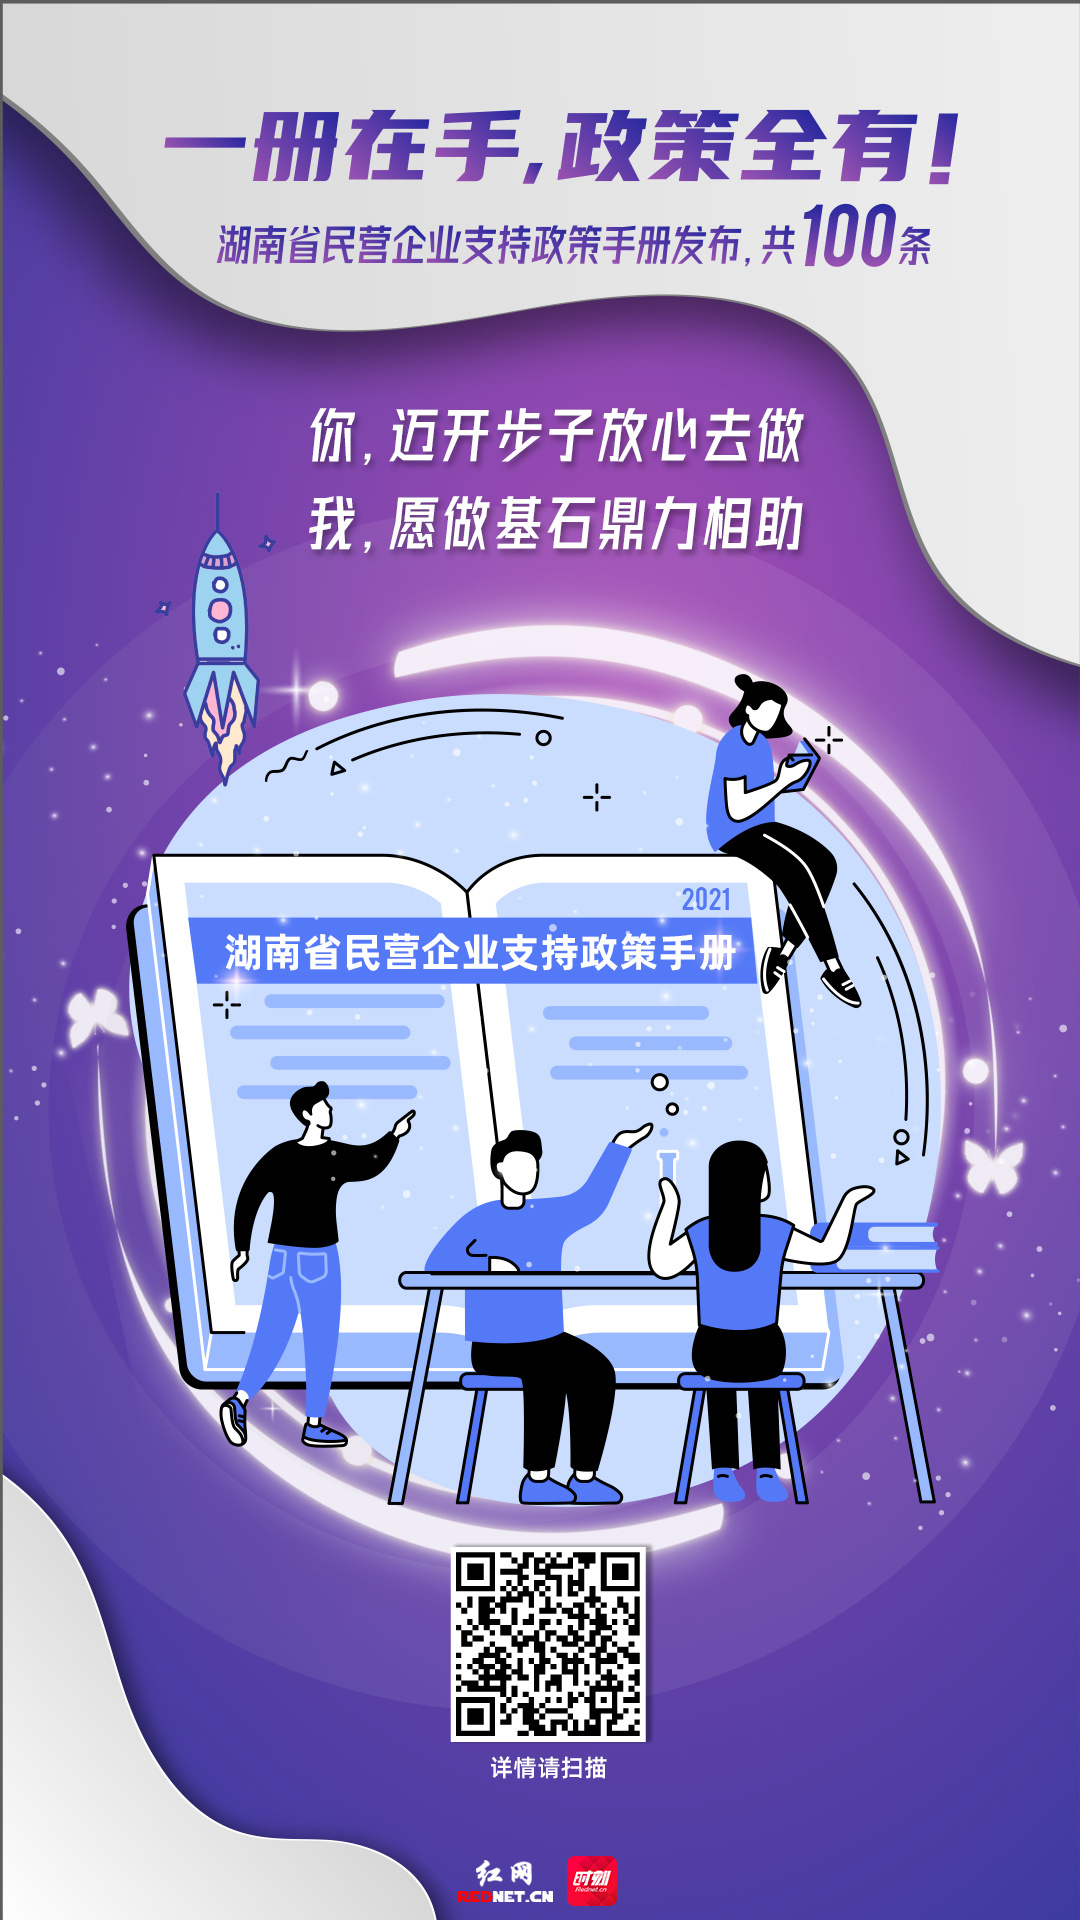 海报丨史上最全！湖南省民营企业支持政策手册发布，共100条